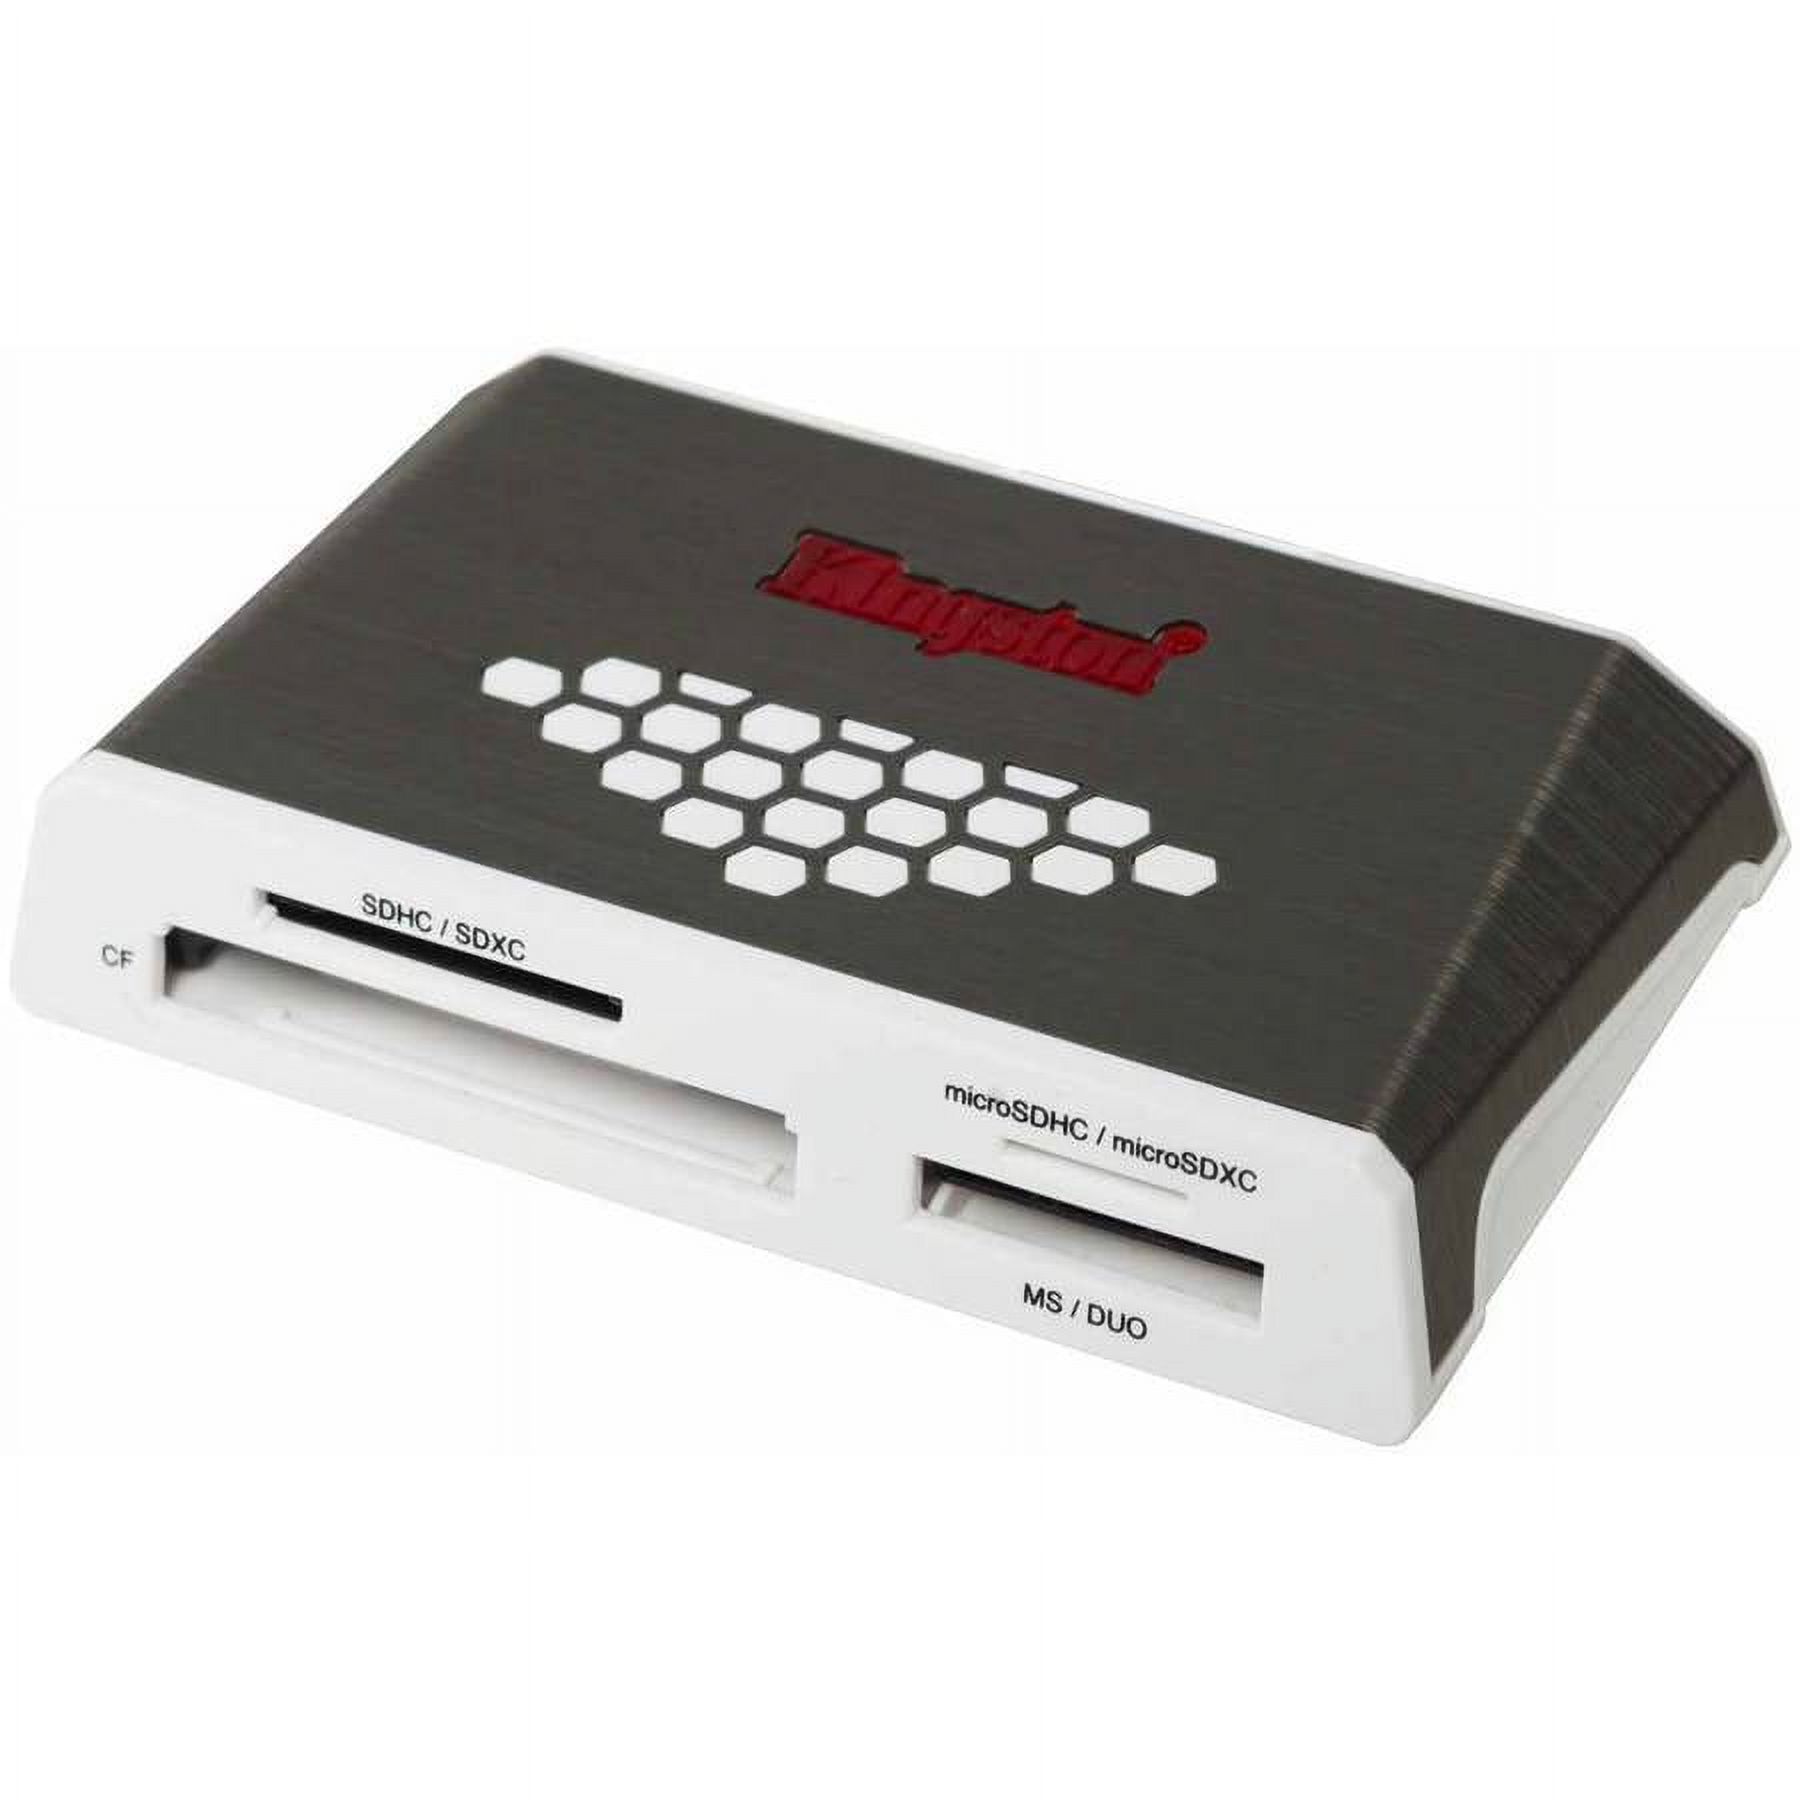 Kingston High-Speed Media Reader - card reader - USB 3.0 - image 1 of 8